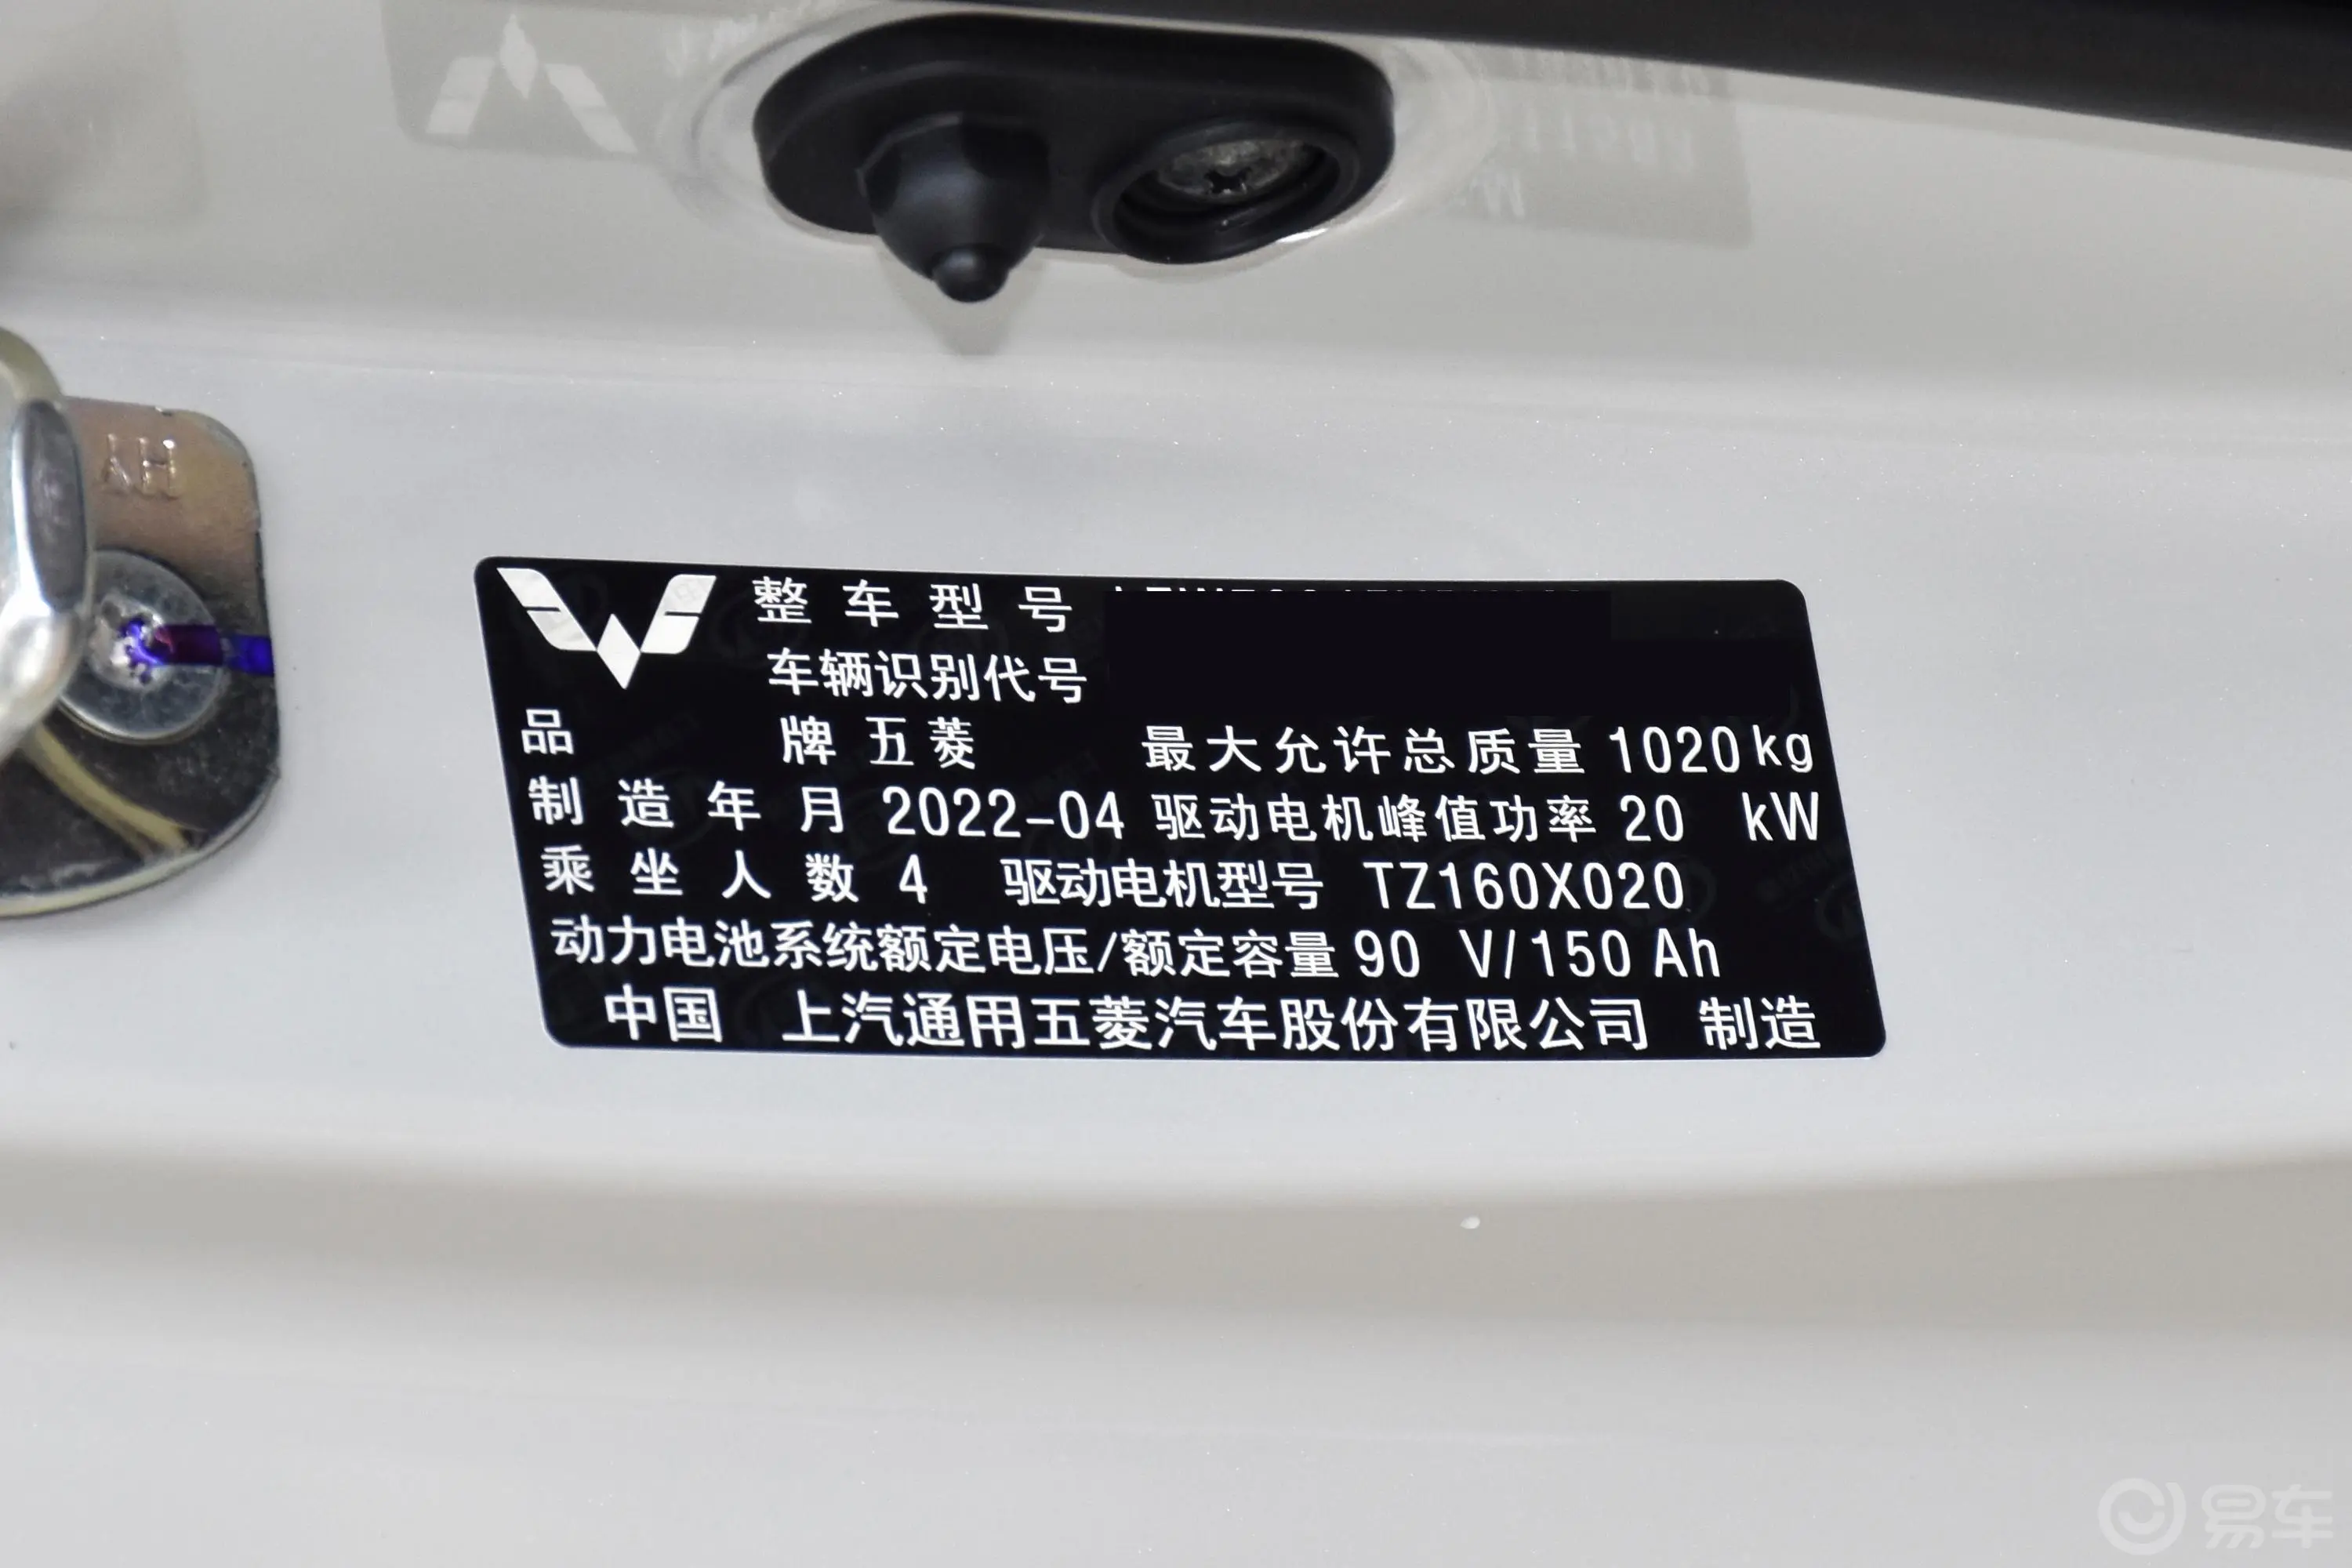 宏光MINIEV马卡龙 170km 臻享款 磷酸铁锂车辆信息铭牌